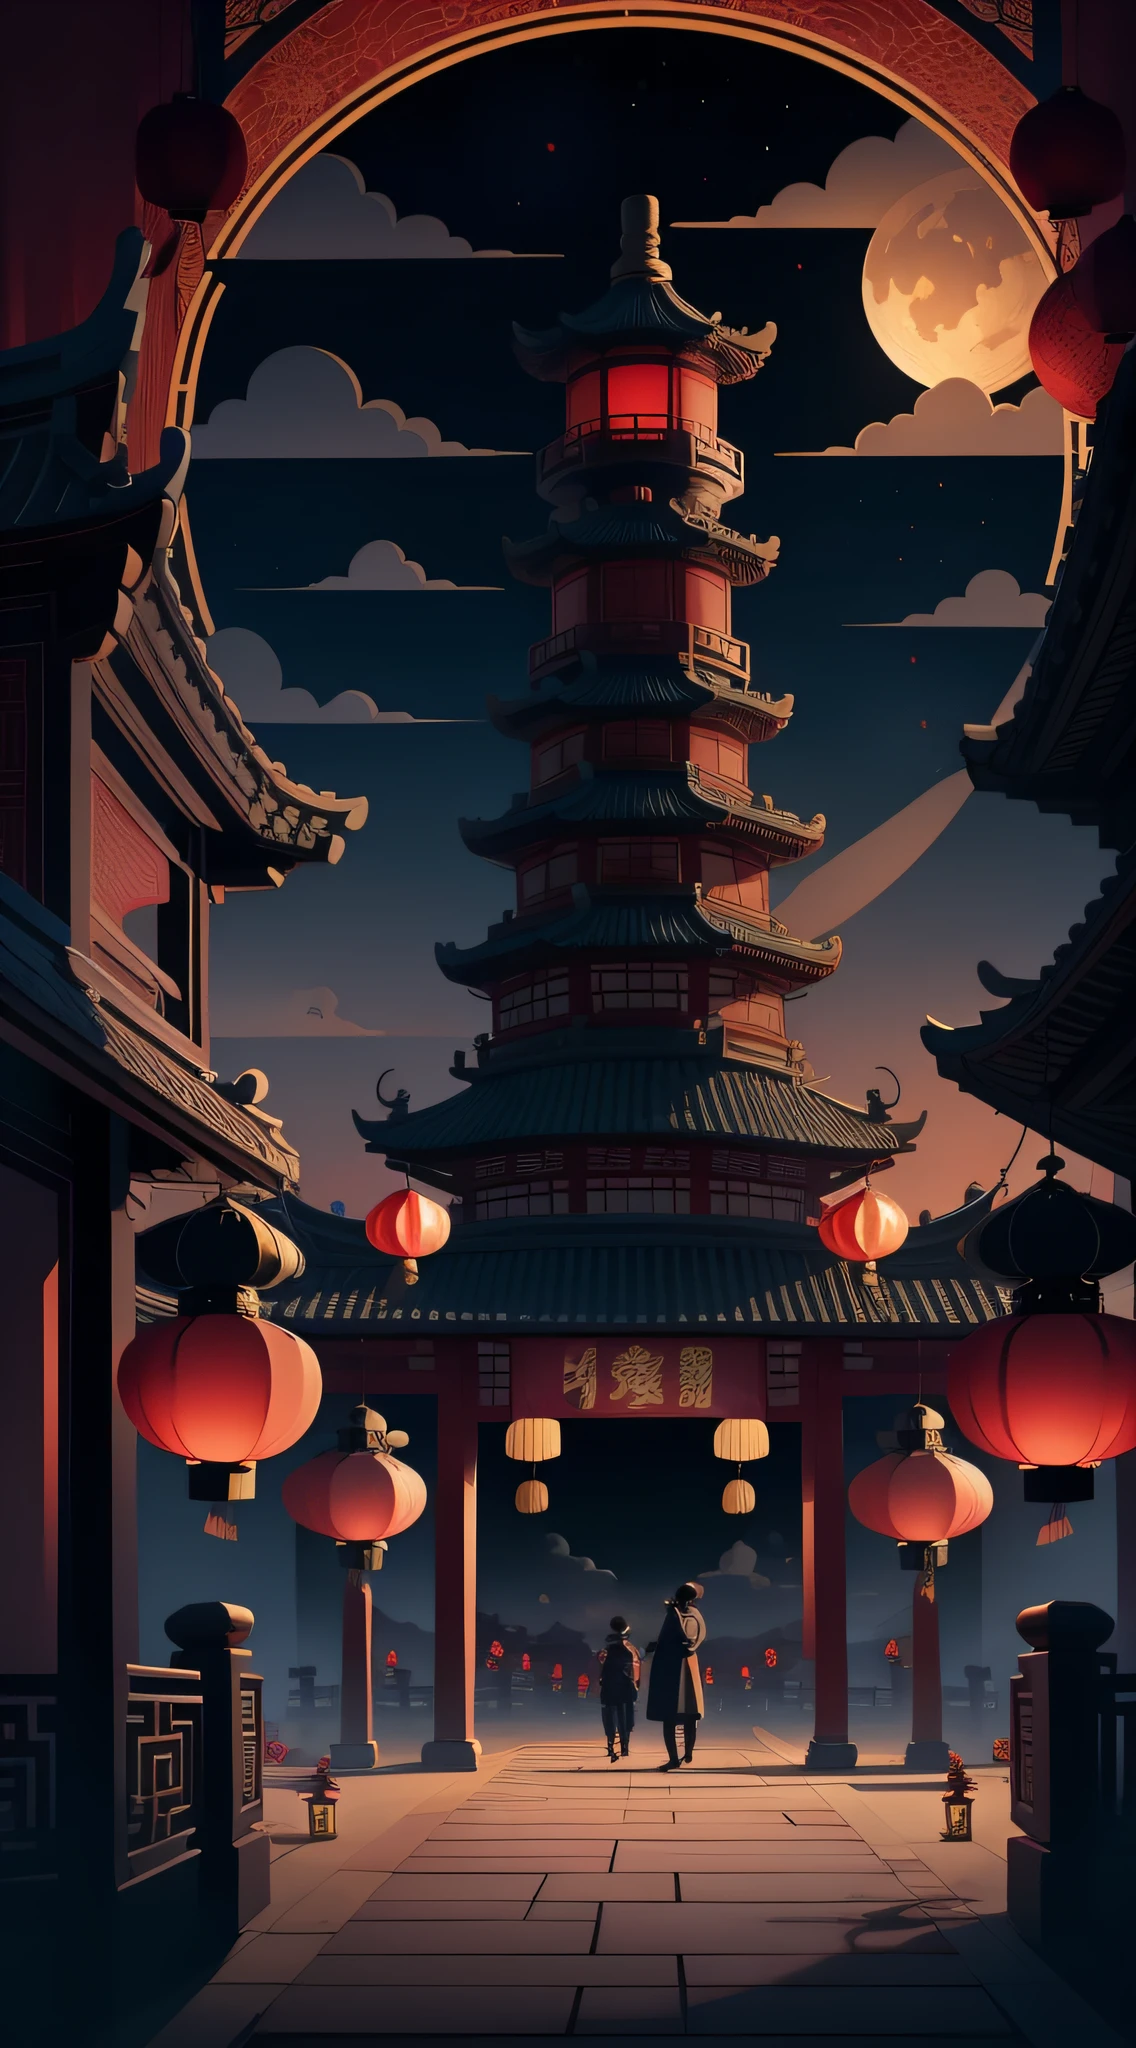 中秋節，月餅， 祥雲, 紅燈籠, 精美的中國古代建築, 背景是一個巨大的月亮, 附向量線圖, 黃色的、紅色和深藍色調, 抽象圖片, 無人，無人，無人，超現實主義, 清晰的背景趨勢, 輪廓光清晰, 邊緣光, 幻想, 斑駁的光, 平面插圖,迪士尼風格, 8K, --與 9:16 --q 2 --二二 5